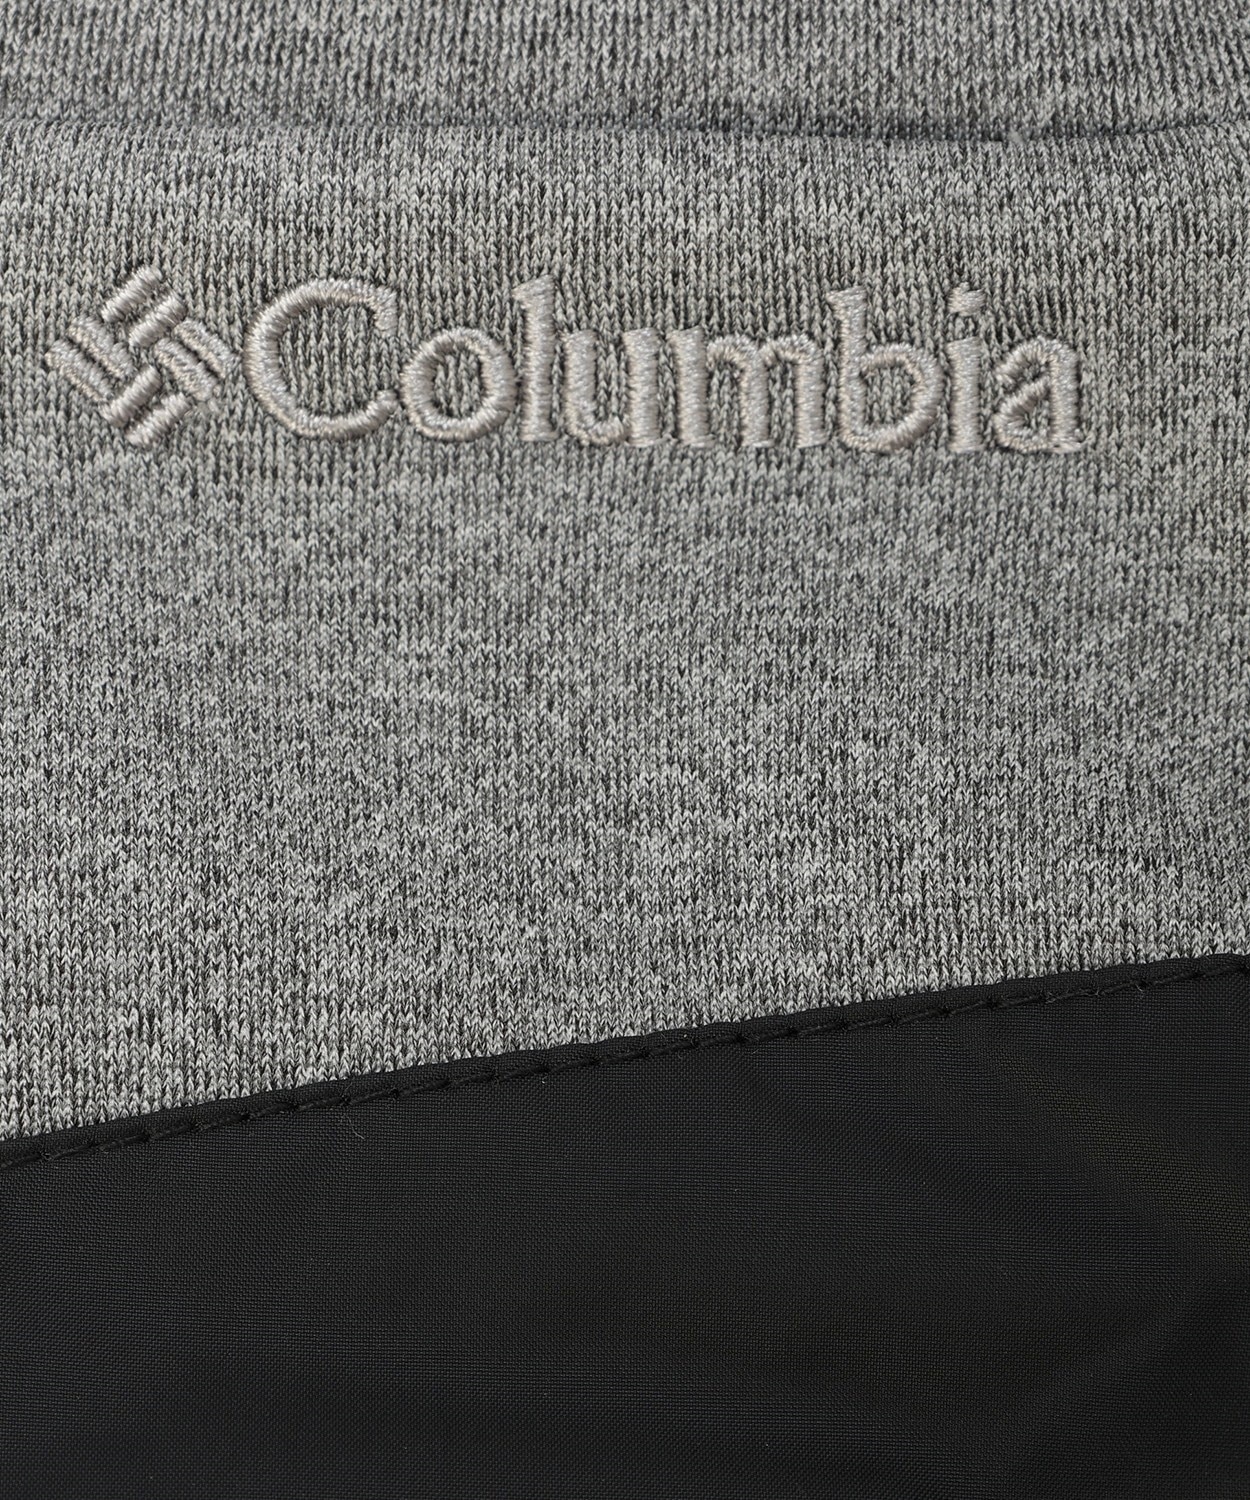 メンズクラウドキャップフリースグローブ(S Black): アウトレット商品以外用│コロンビア(Columbia)公式通販サイト